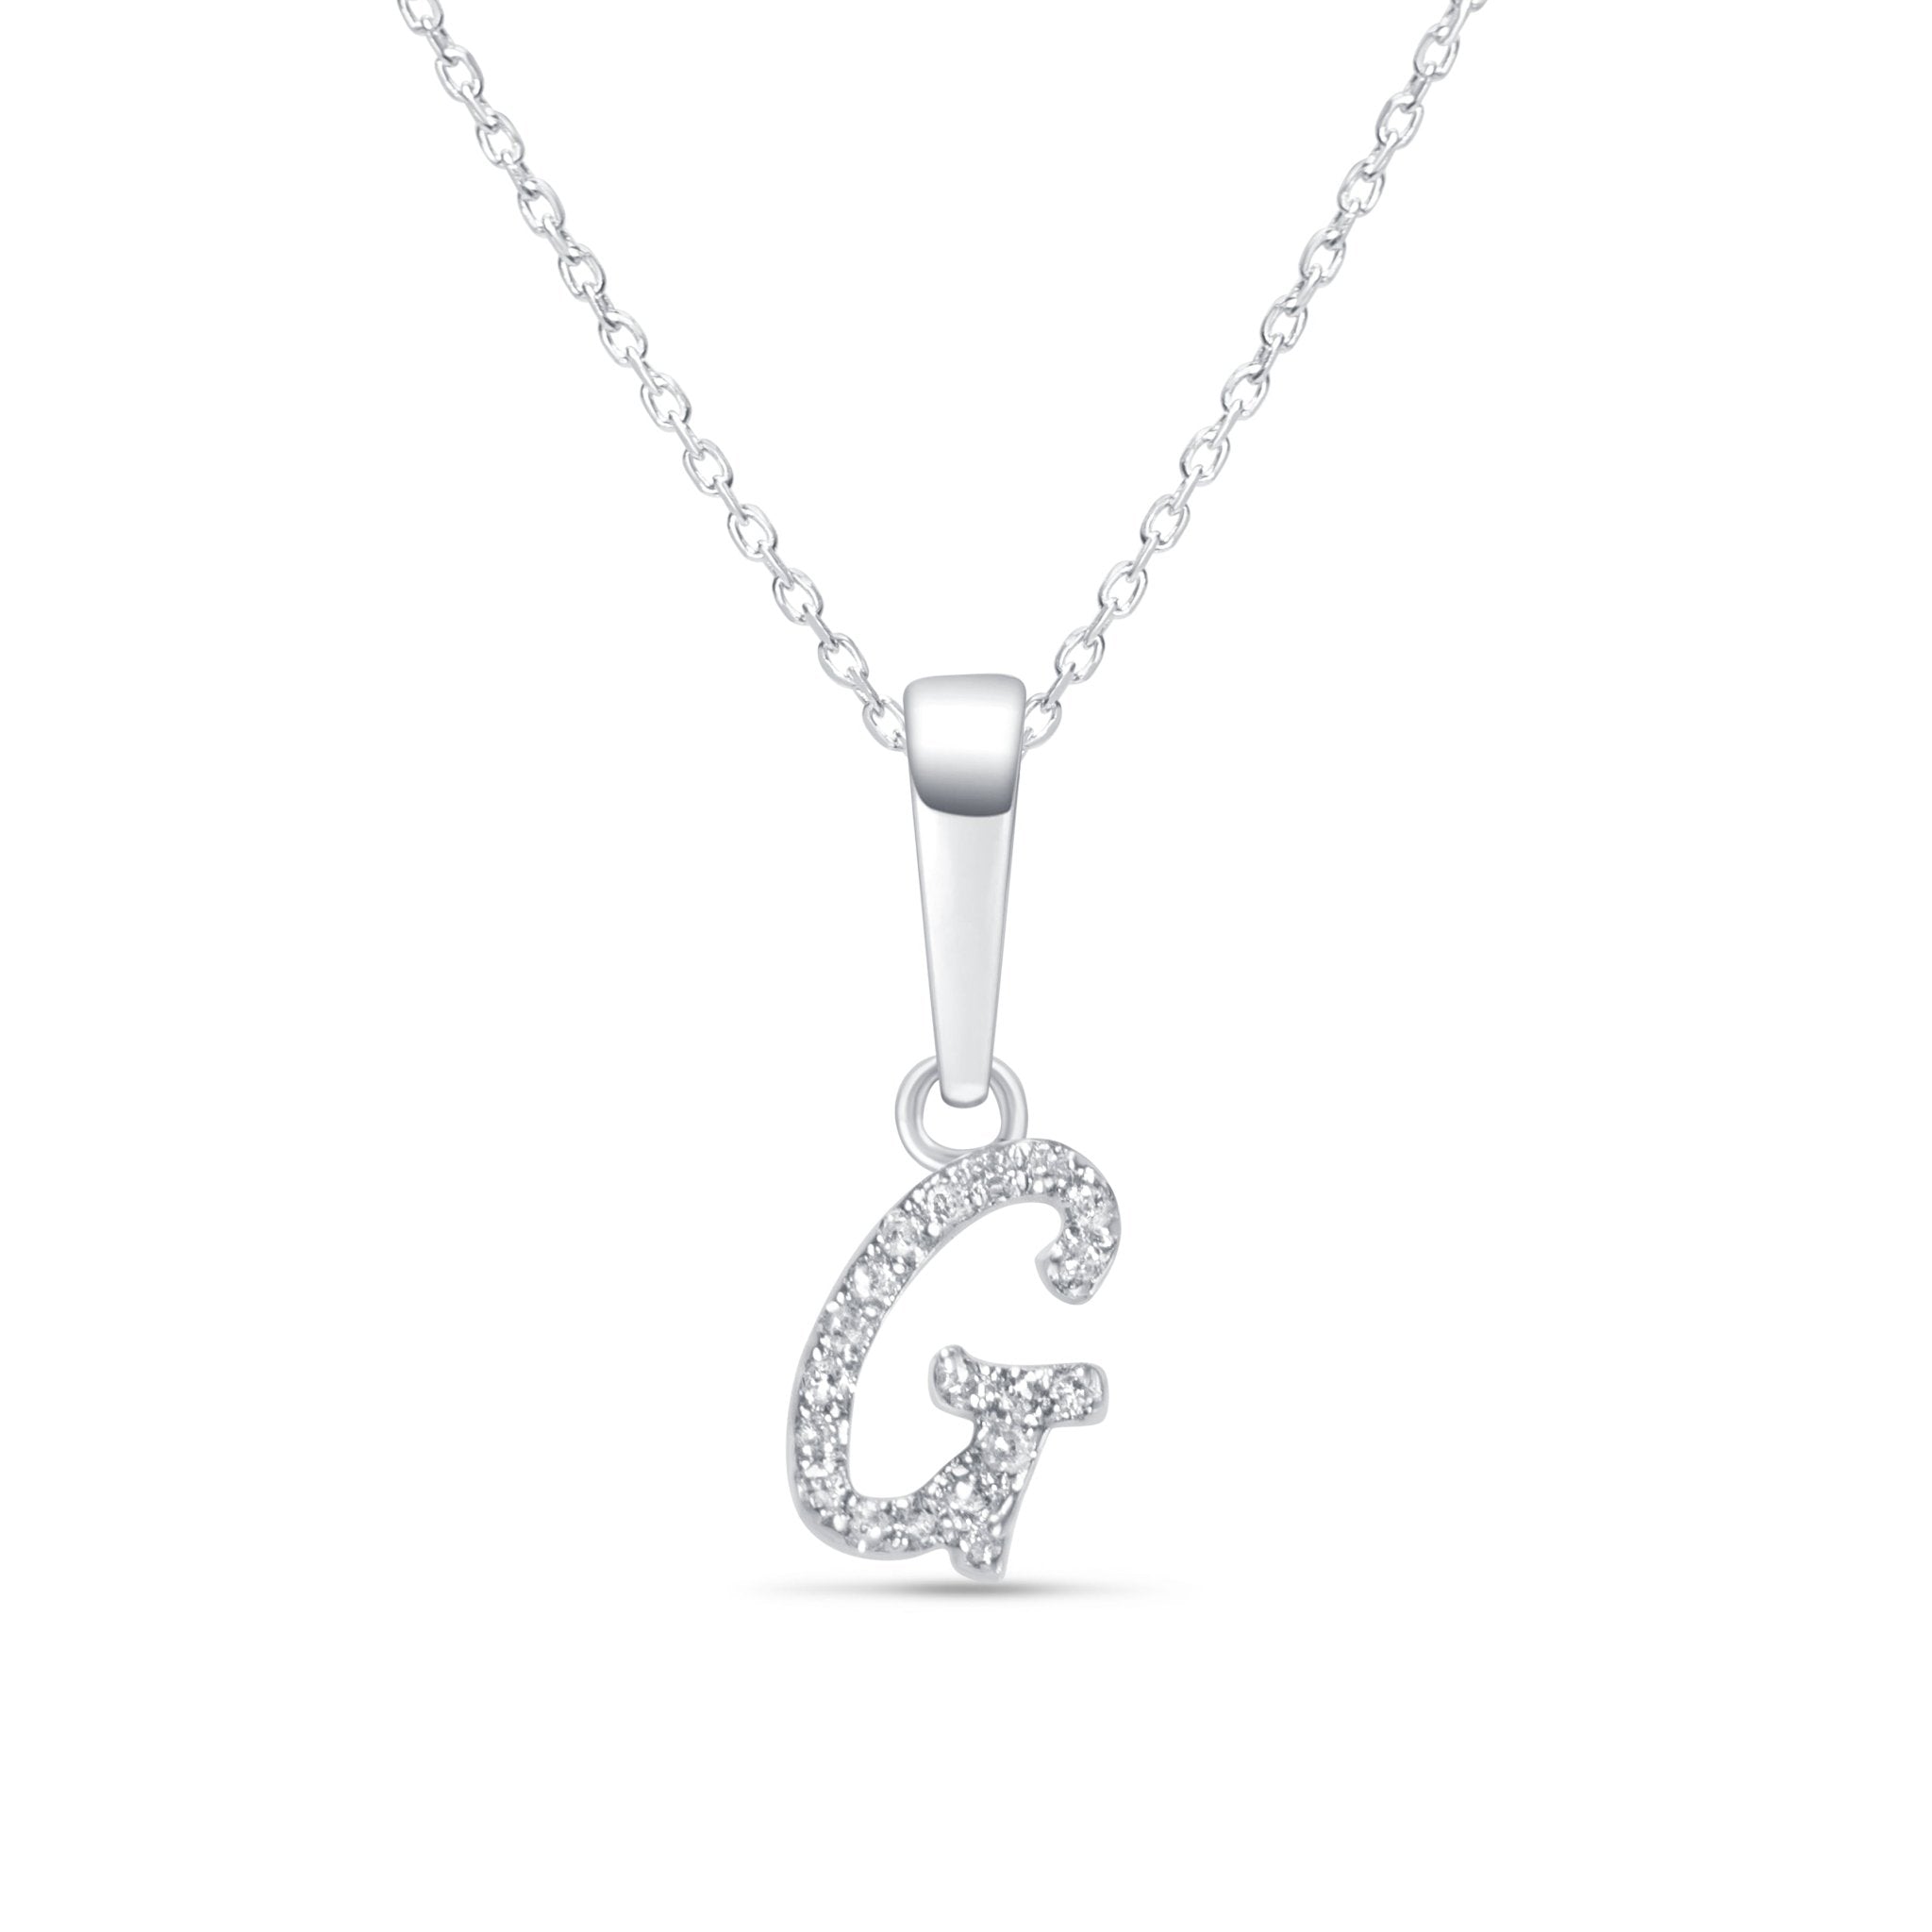 Cursive Diamond Initial Necklace - G Necklaces Estella Collection #product_description# 18557 14k Diamond Gemstone #tag4# #tag5# #tag6# #tag7# #tag8# #tag9# #tag10# 14k White Gold